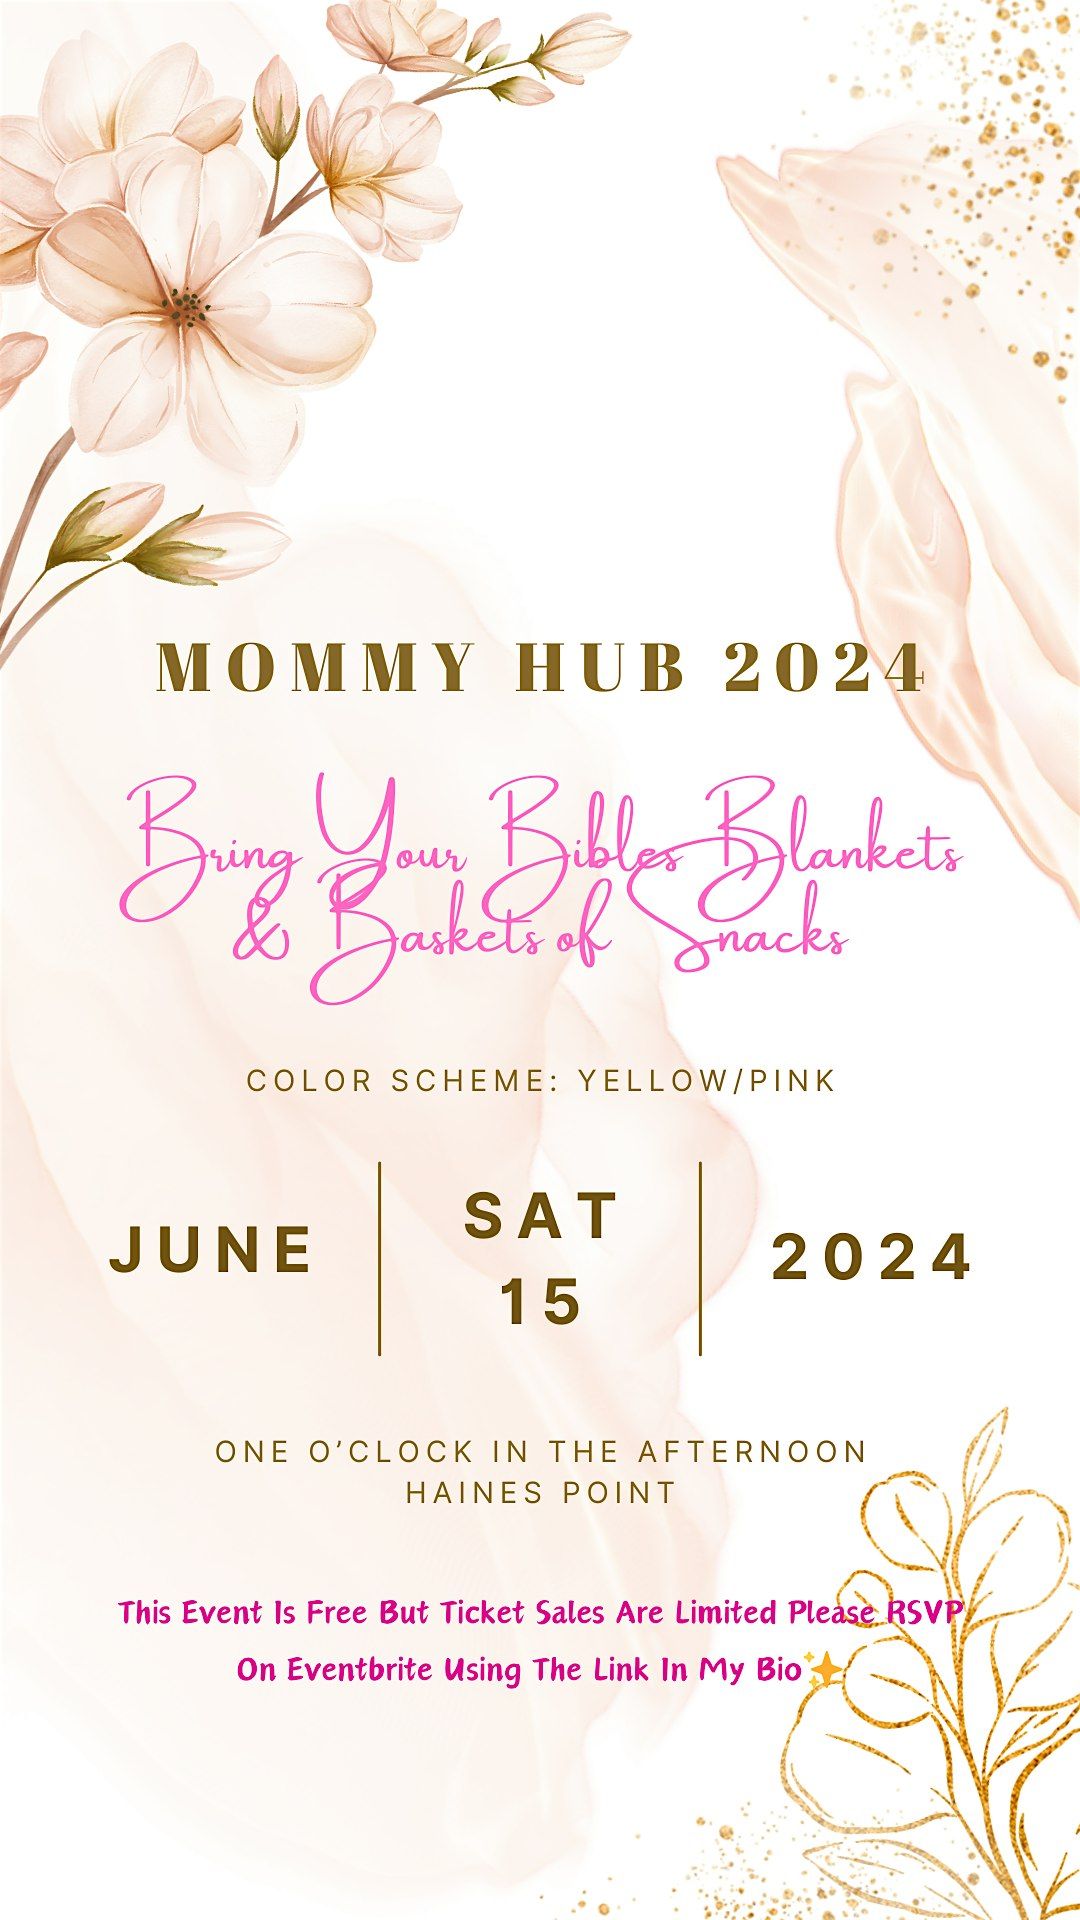 Mommy Hub 2024